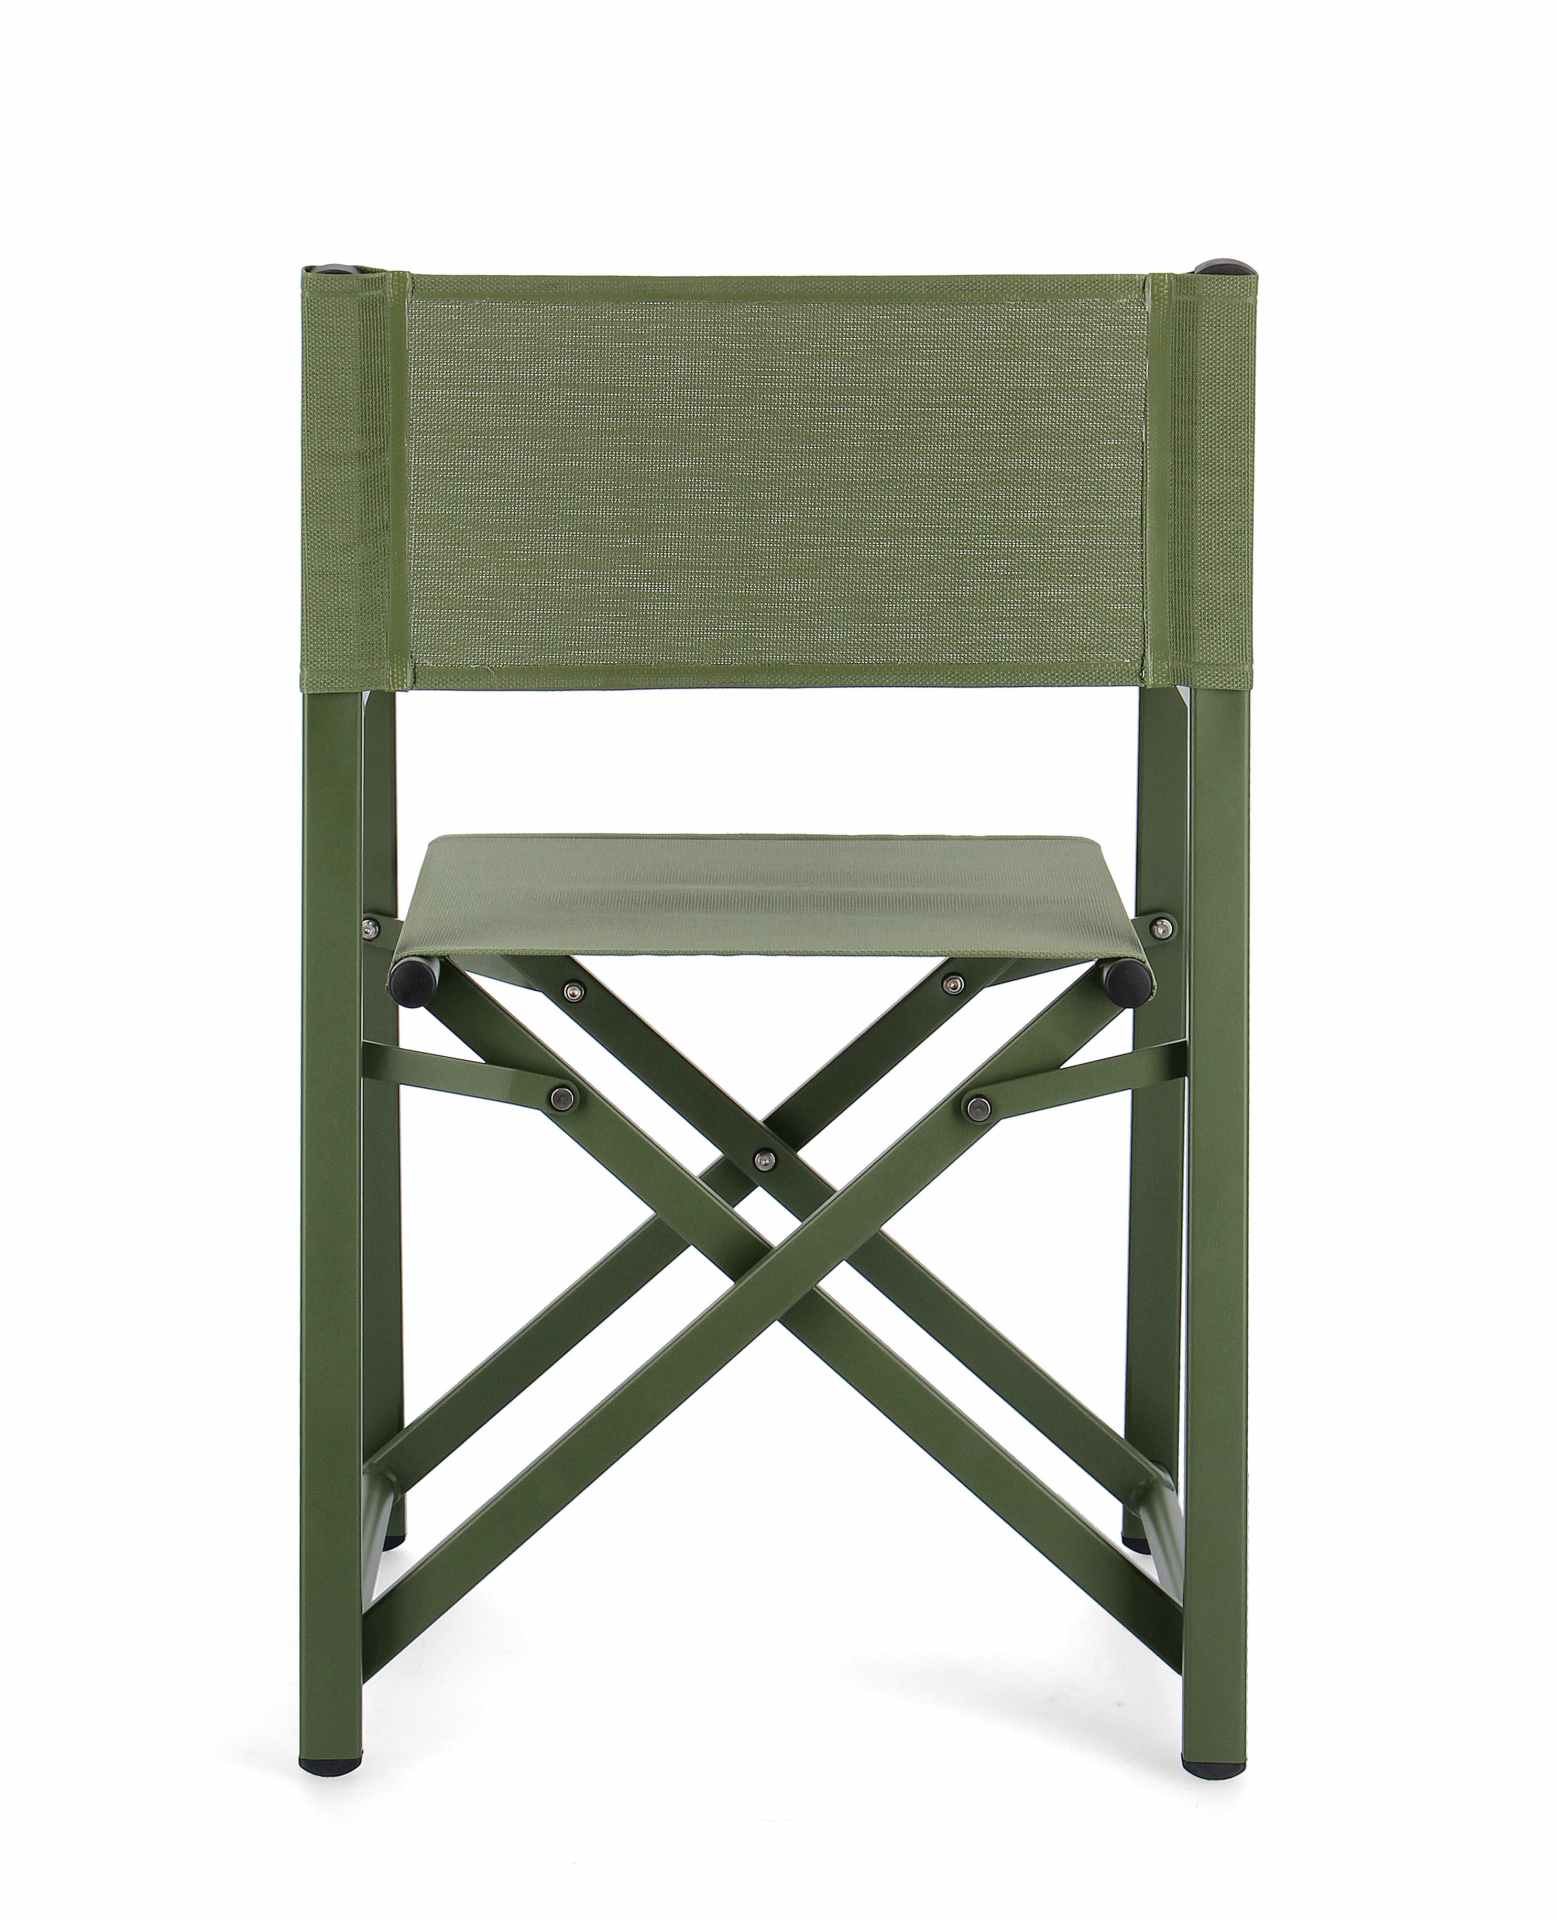 Der Gartenstuhl Taylor überzeugt mit seinem modernen Design. Gefertigt wurde er aus Textilene, welche einen grünen Farbton besitzt. Das Gestell ist aus Aluminium und hat auch eine grüne Farbe. Der Stuhl verfügt über eine Sitzhöhe von 45 cm und ist für den